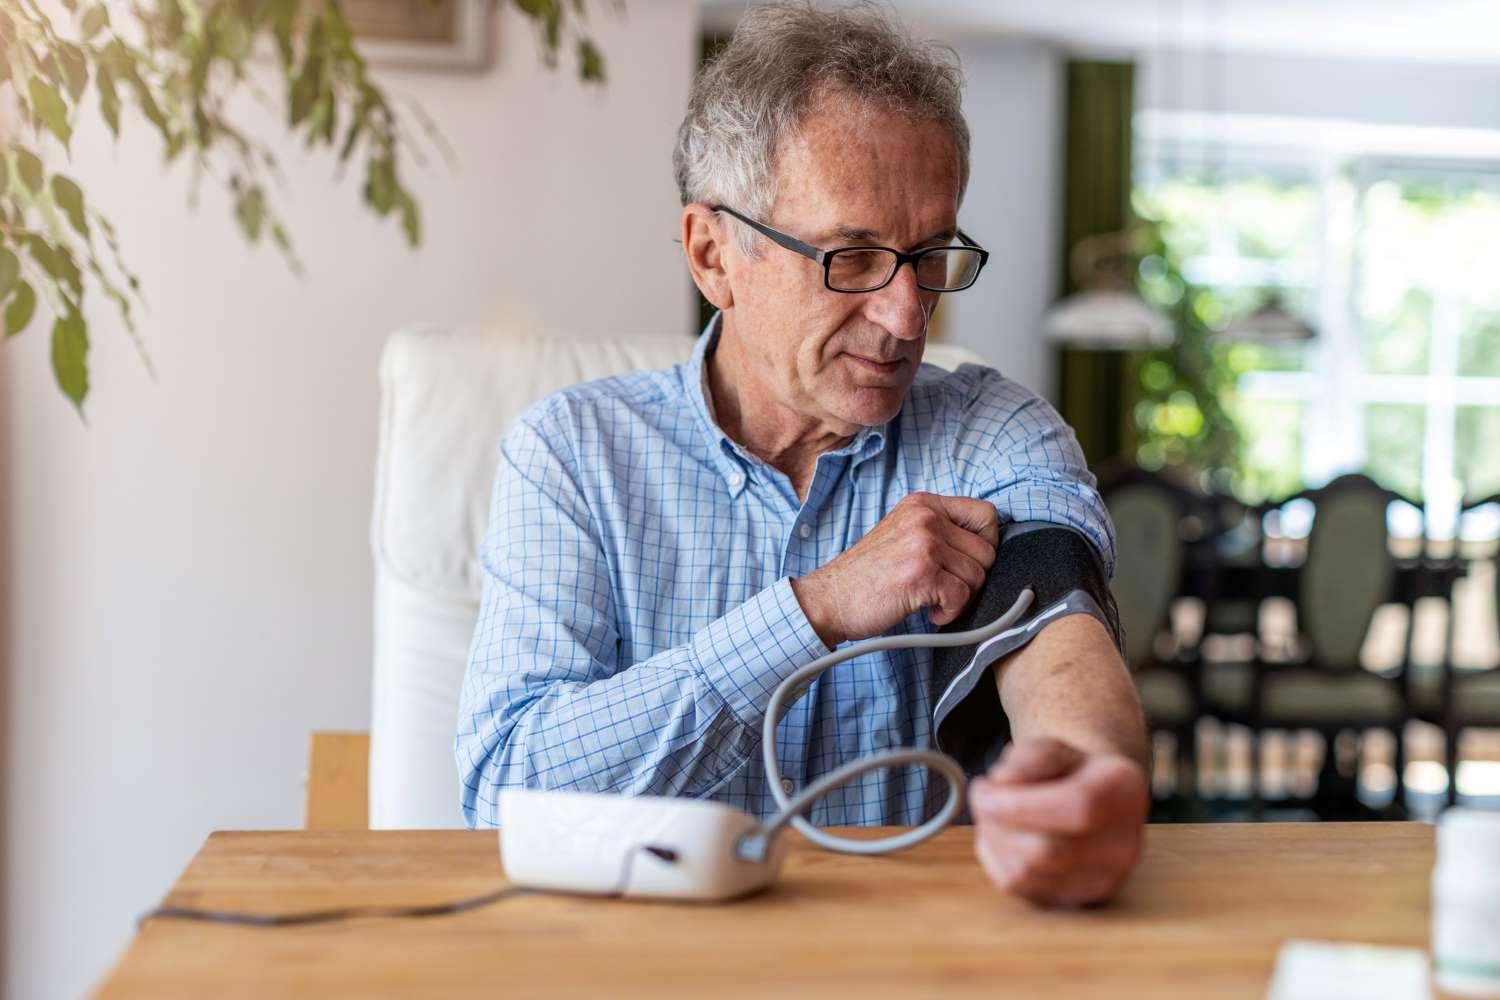 Blutdruckmessgeräte: Älterer Mann sitzt an einem Tisch und befestigt ein Blutdruckmessgerät an seinem Arm.